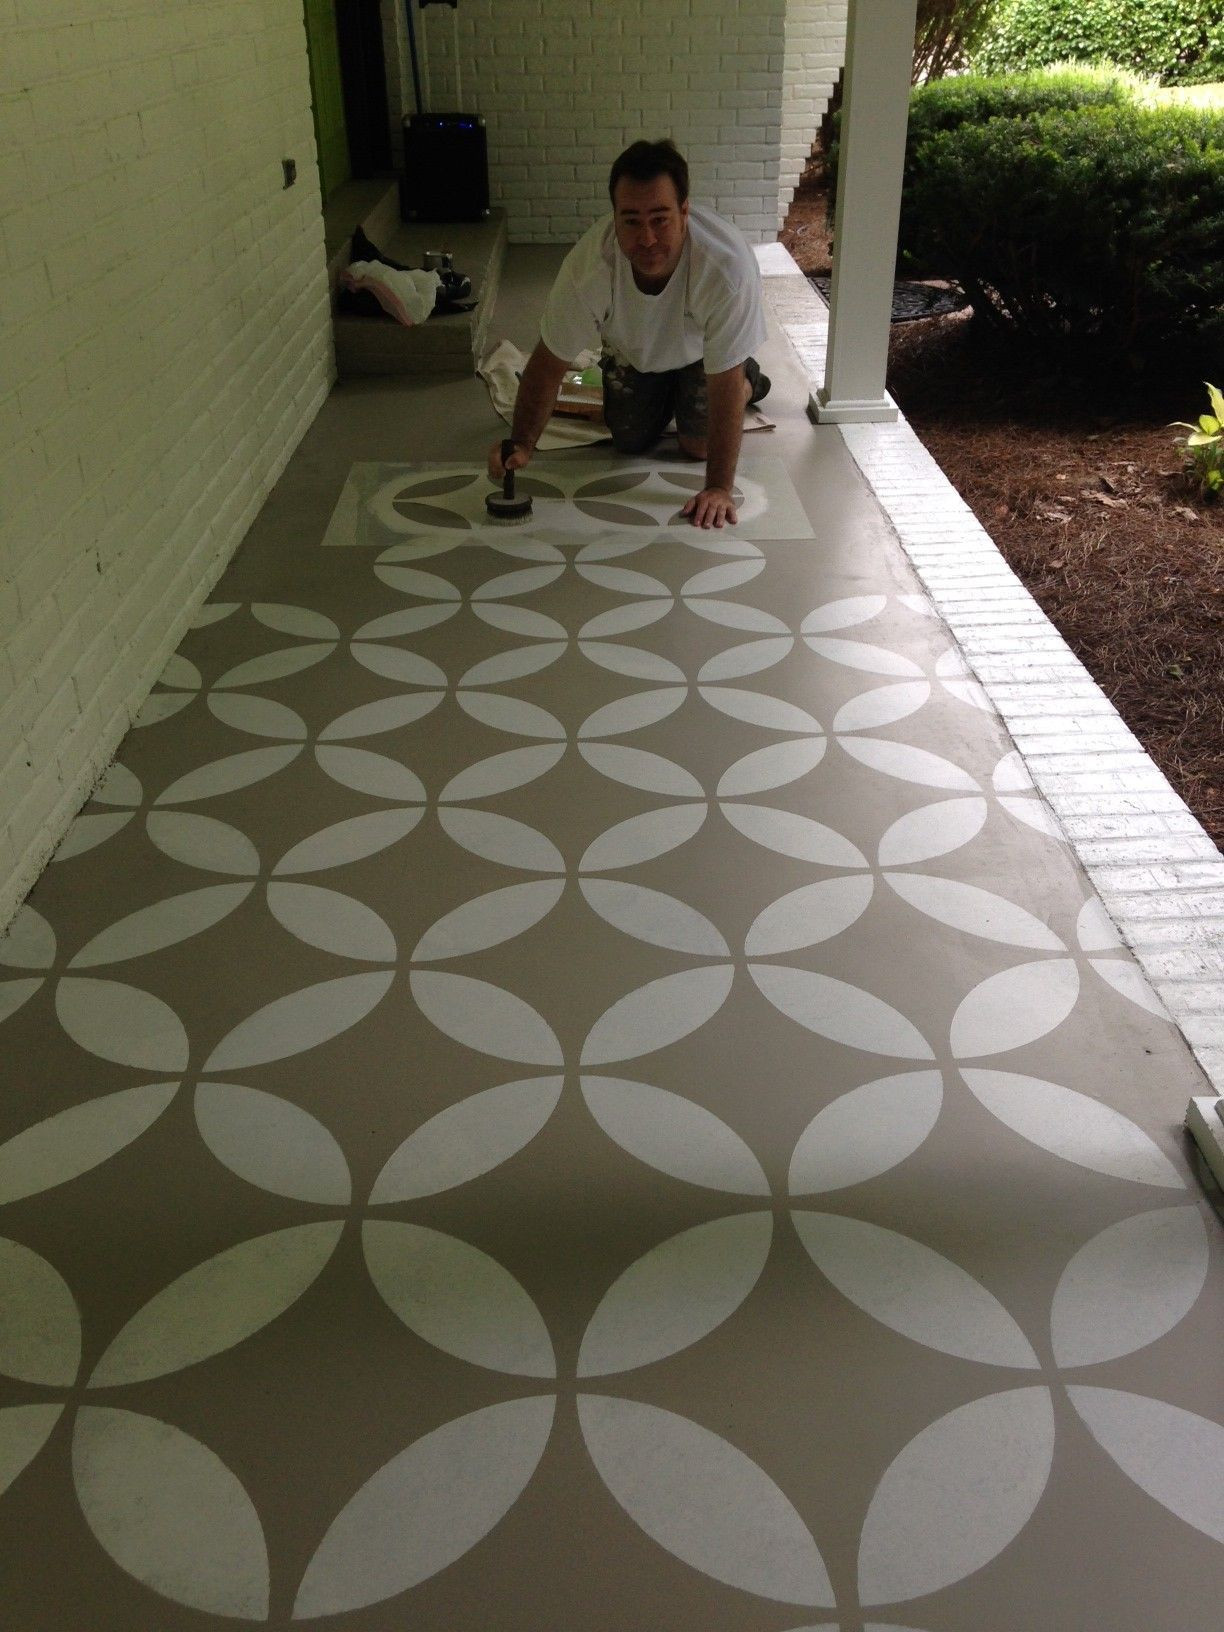 Best ideas about Concrete Patio Paint
. Save or Pin Concrete Patio Floor Paint Ideas yard Now.